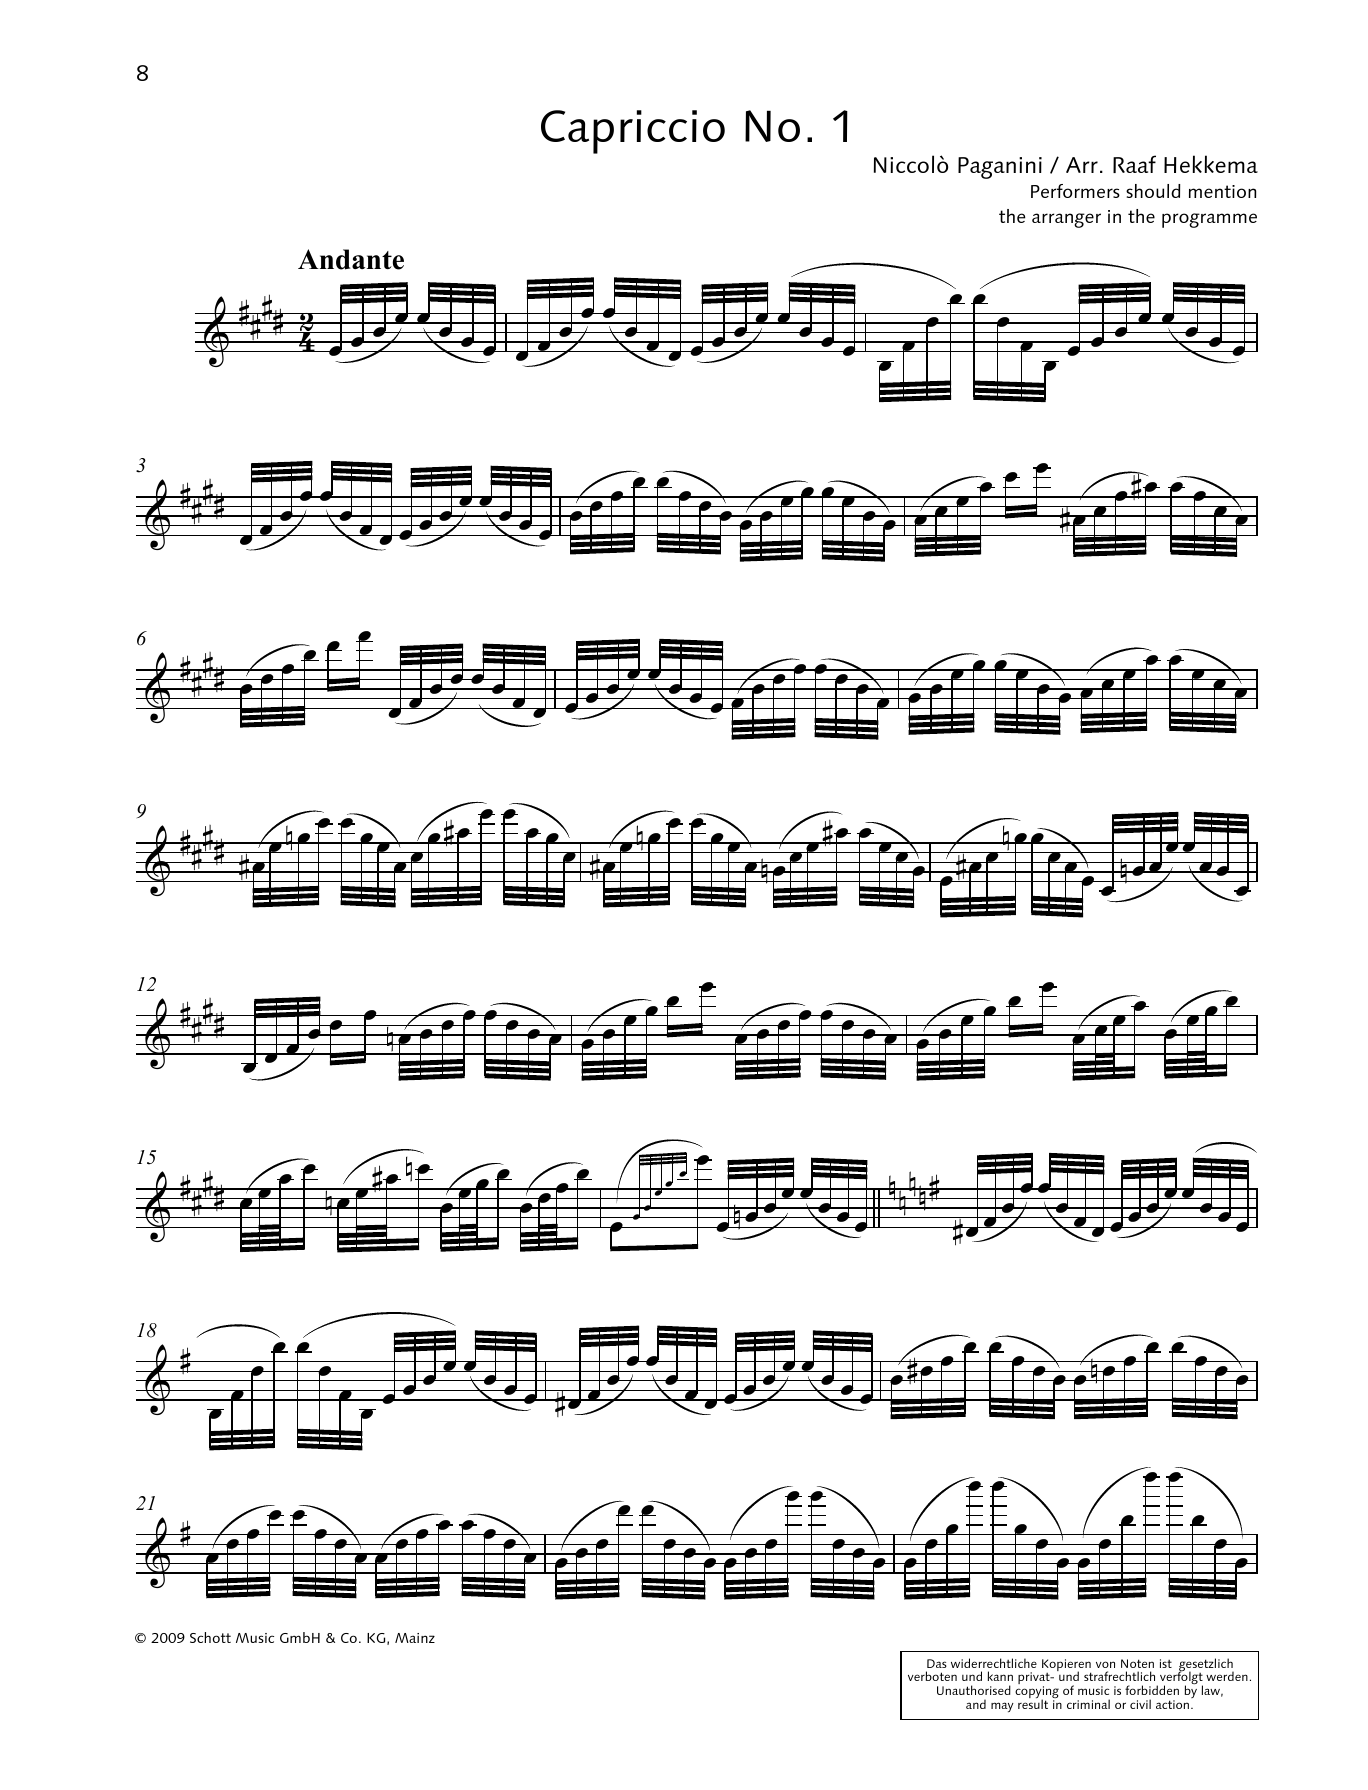 Download Niccolo Paganini Capriccio No. 1 Sheet Music